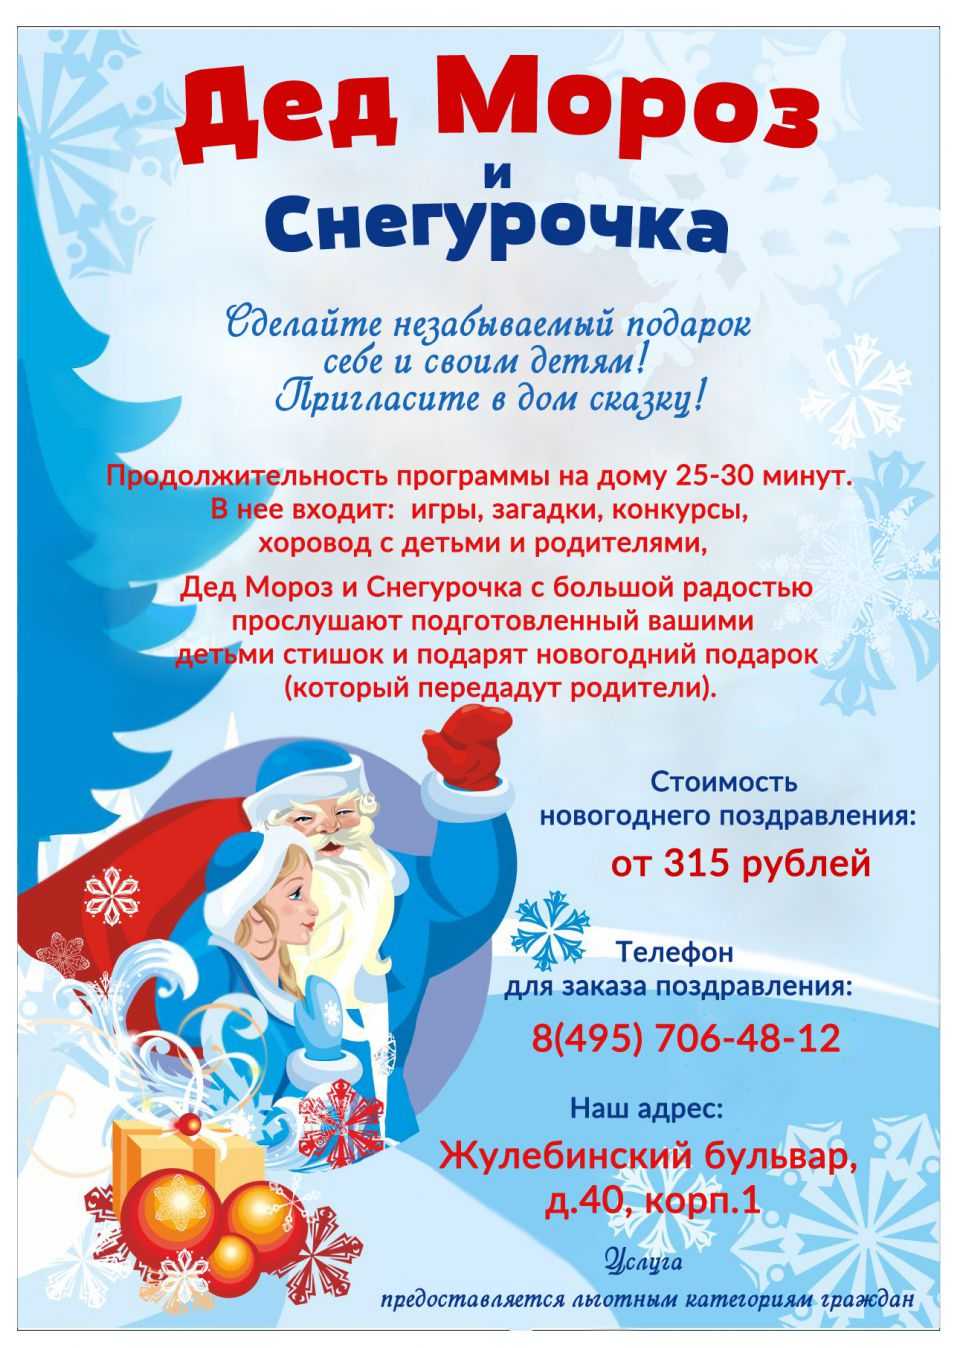 Бесплатные и платные сервисы видео поздравлений от деда мороза и снегурочки с новым 2022 годом - moicom.ru